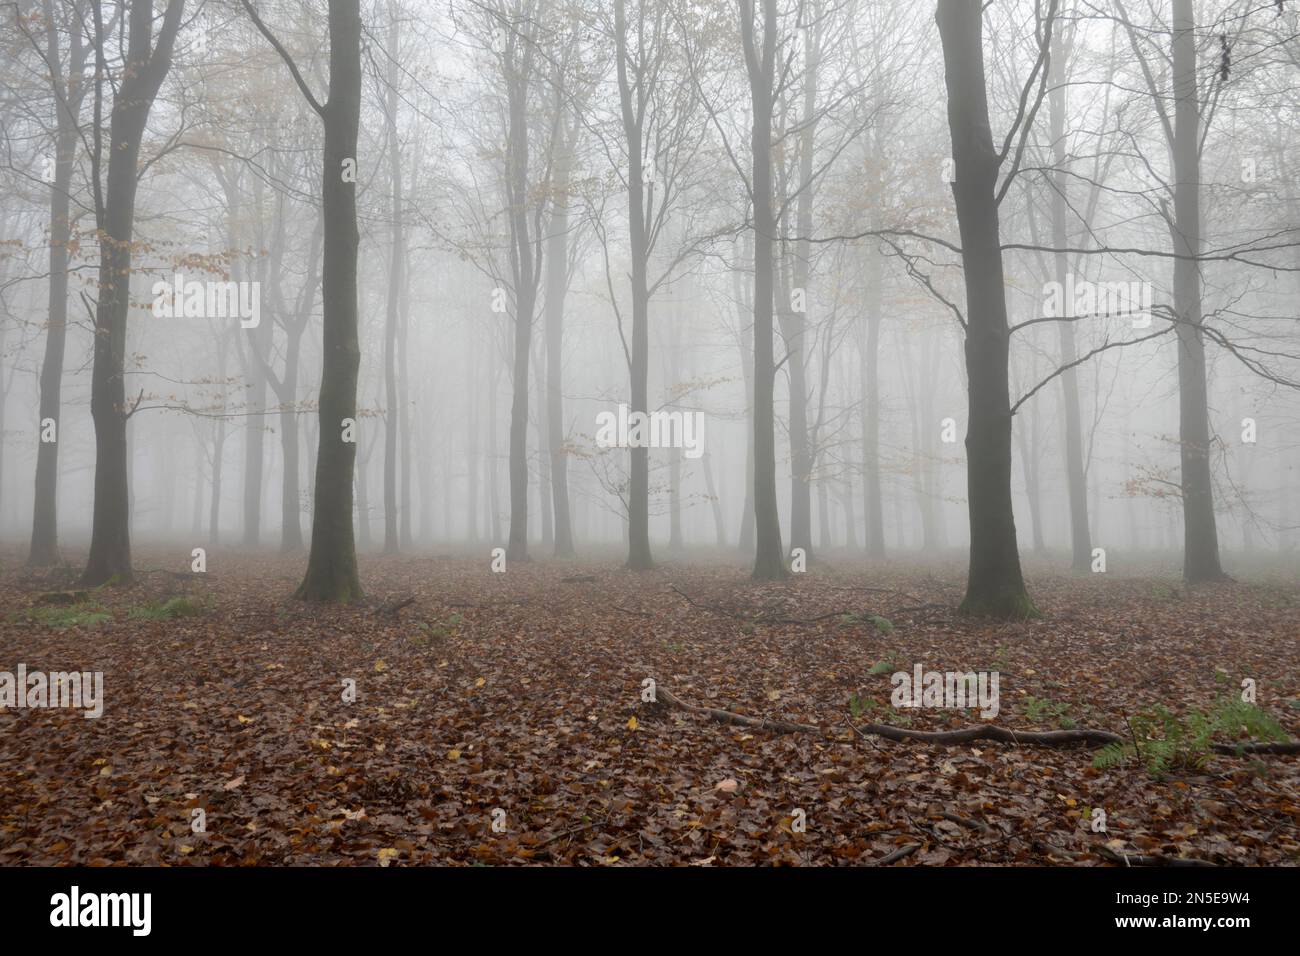 Forêt à feuilles caduques d'hiver avec hêtres nus dans le brouillard, Andover, Hampshire, Angleterre, Royaume-Uni, Europe Banque D'Images